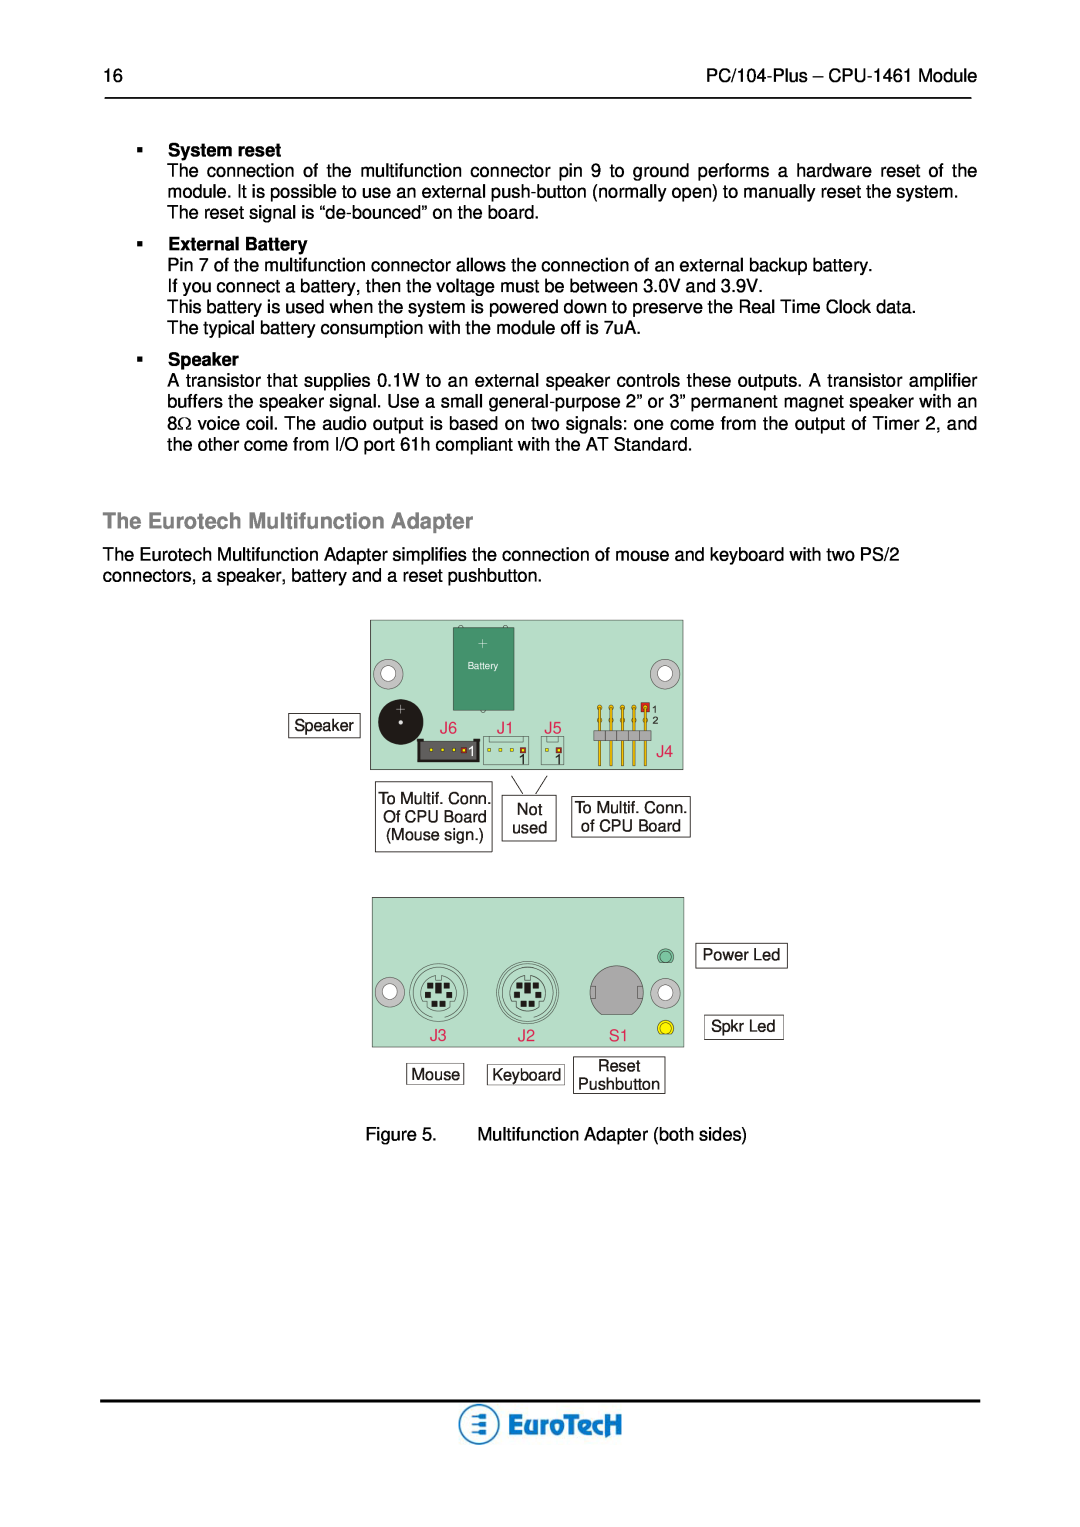 Eurotech Appliances CPU-1461 user manual The Eurotech Multifunction Adapter, ƒ System reset, ƒ External Battery, ƒ Speaker 